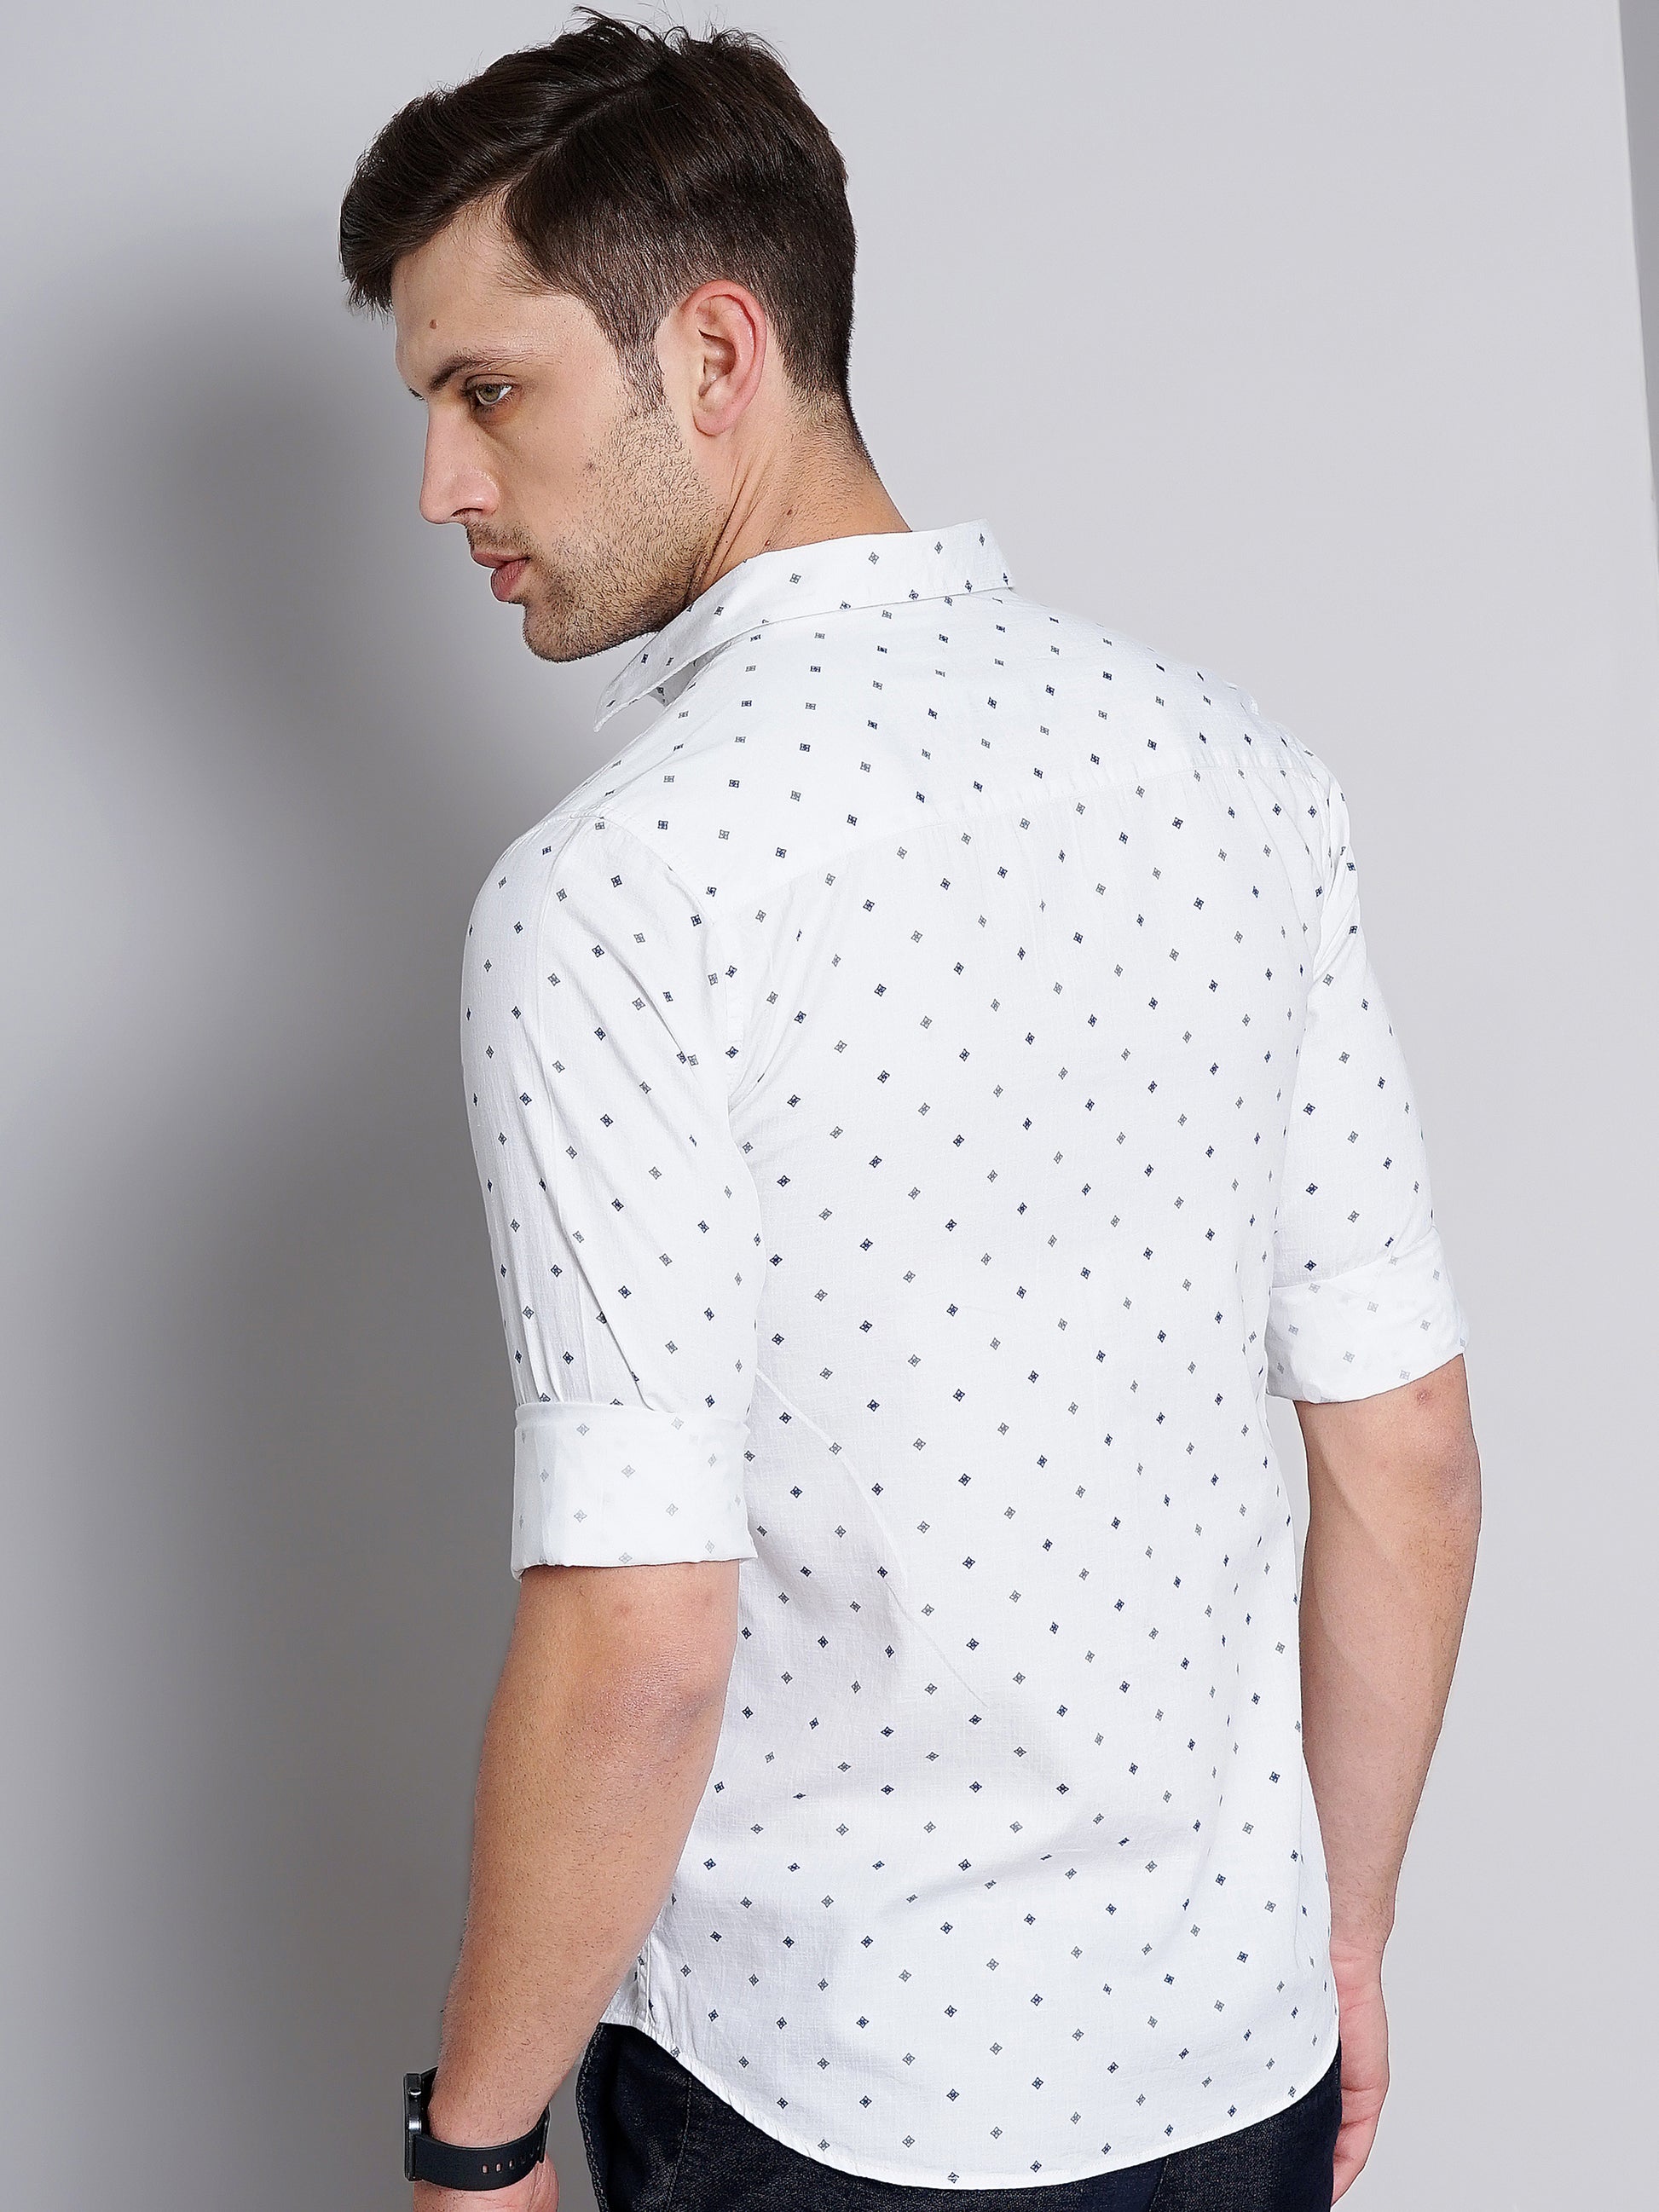 Grey Polka Dot Printed Shirt for Men